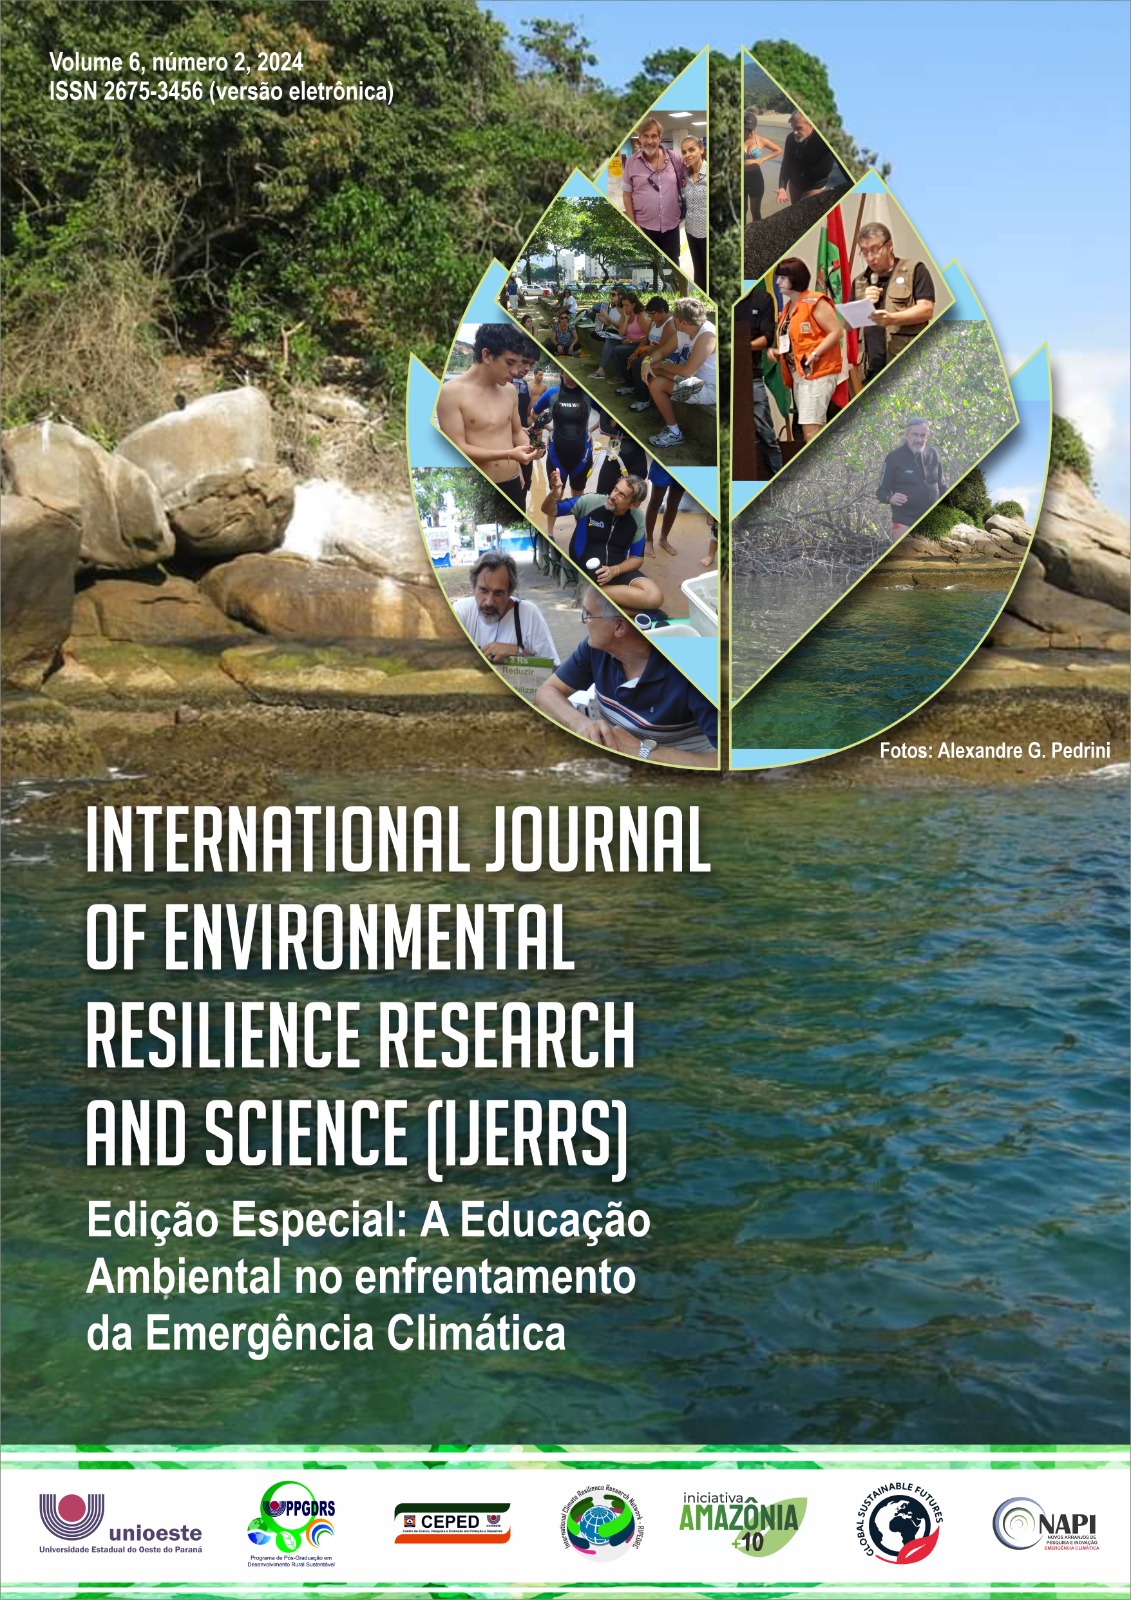 					View Vol. 6 No. 2 (2024): EDIÇÃO ESPECIAL - Educação Ambiental frente à Emergência Climática
				